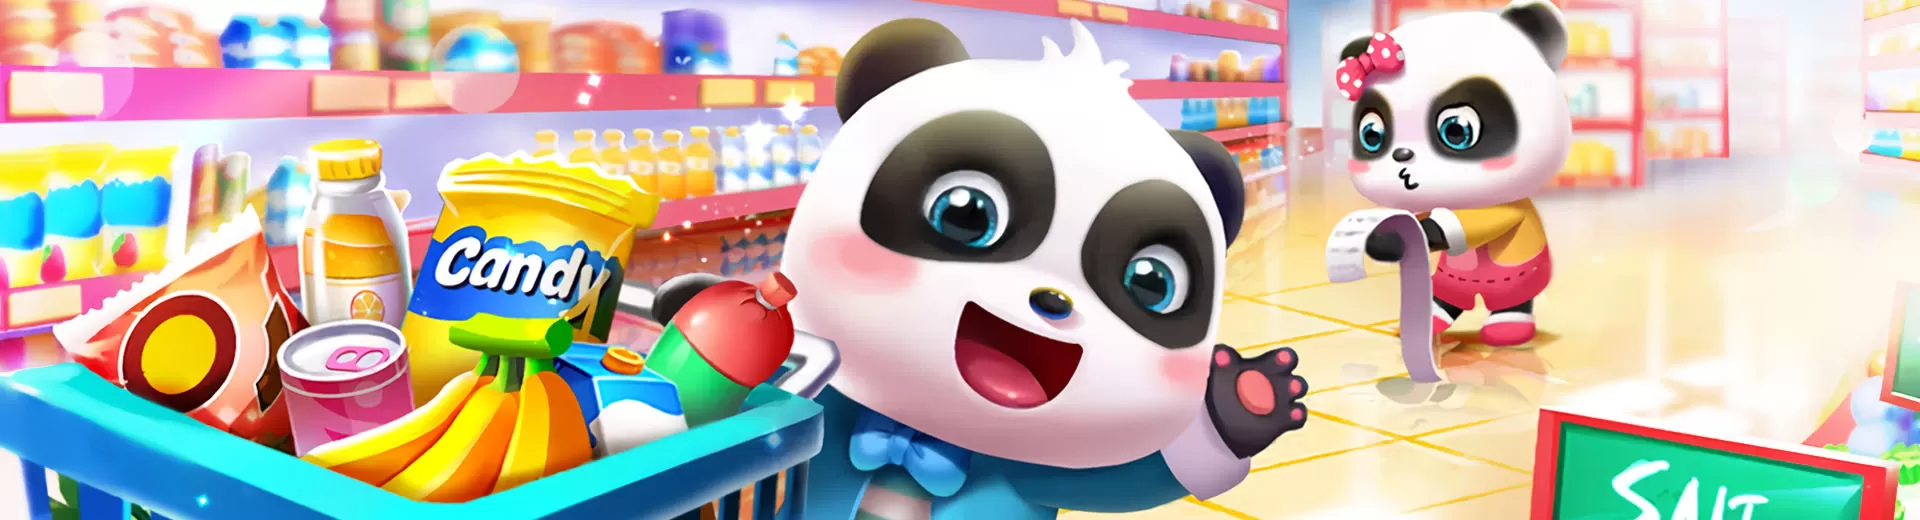 Baby Panda S Emulator Pc